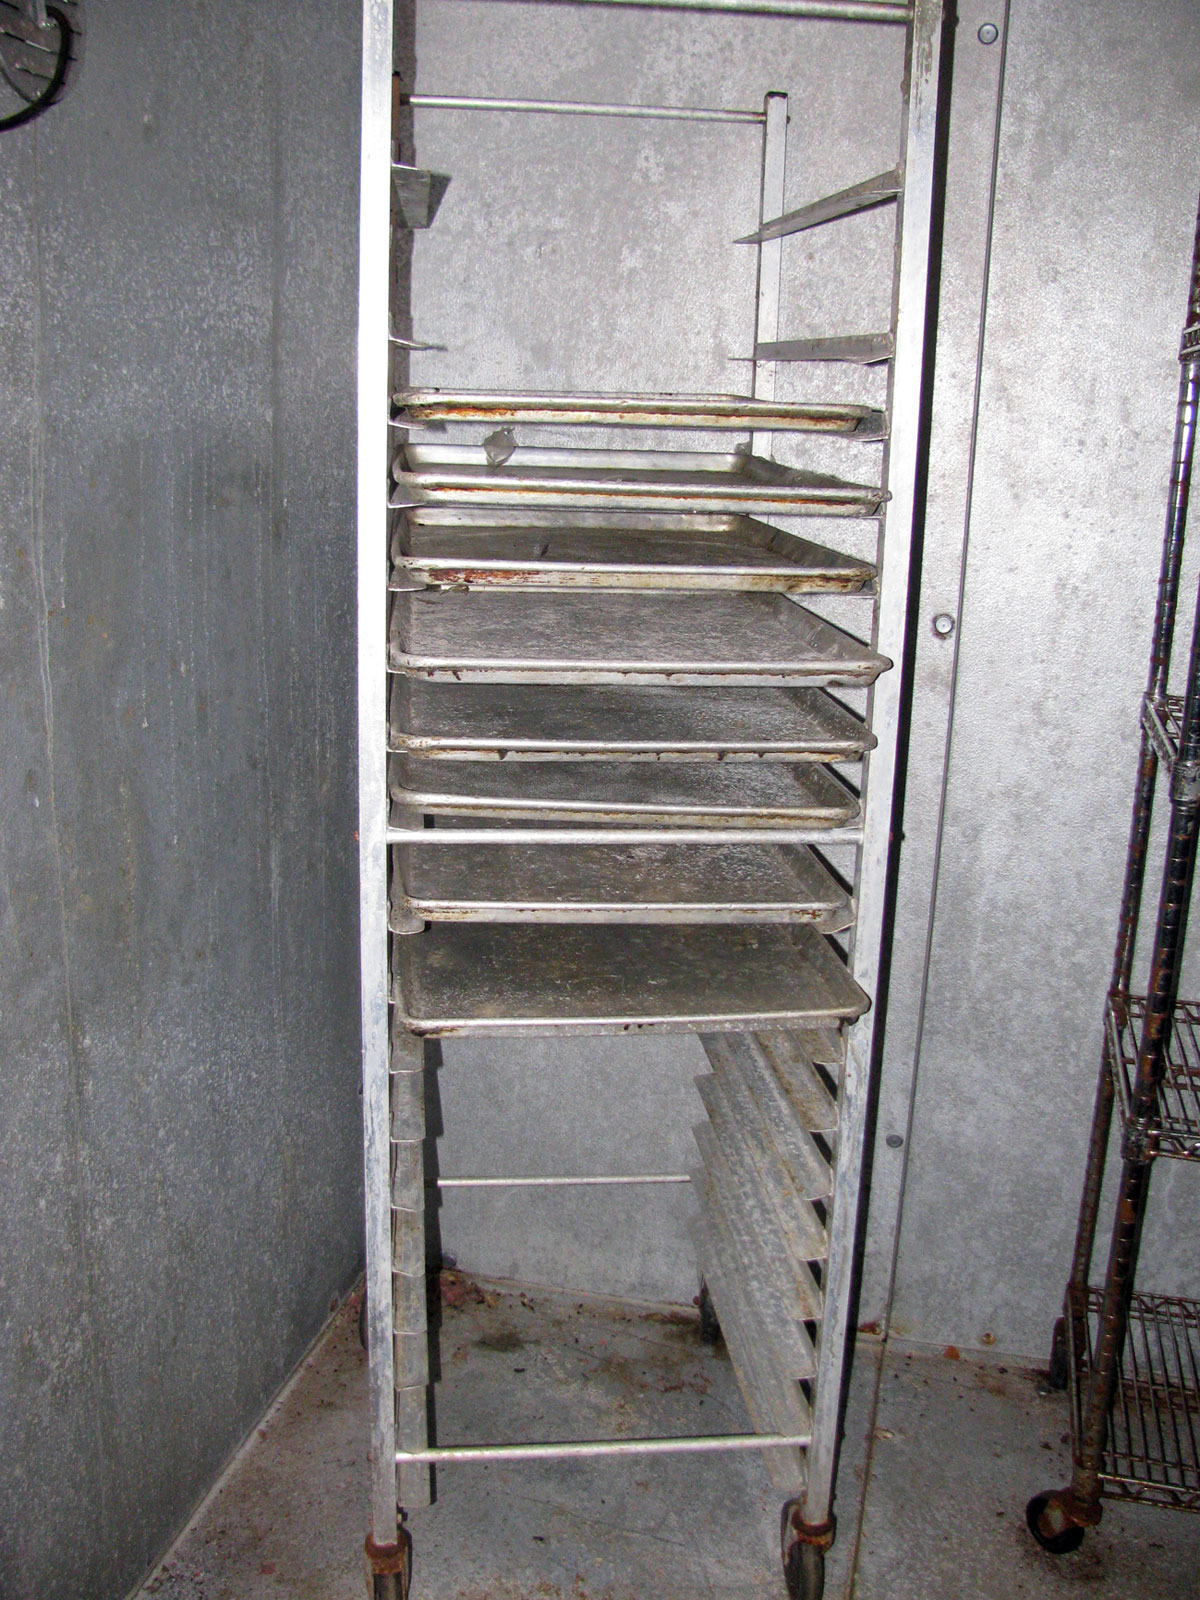 Baker's rack